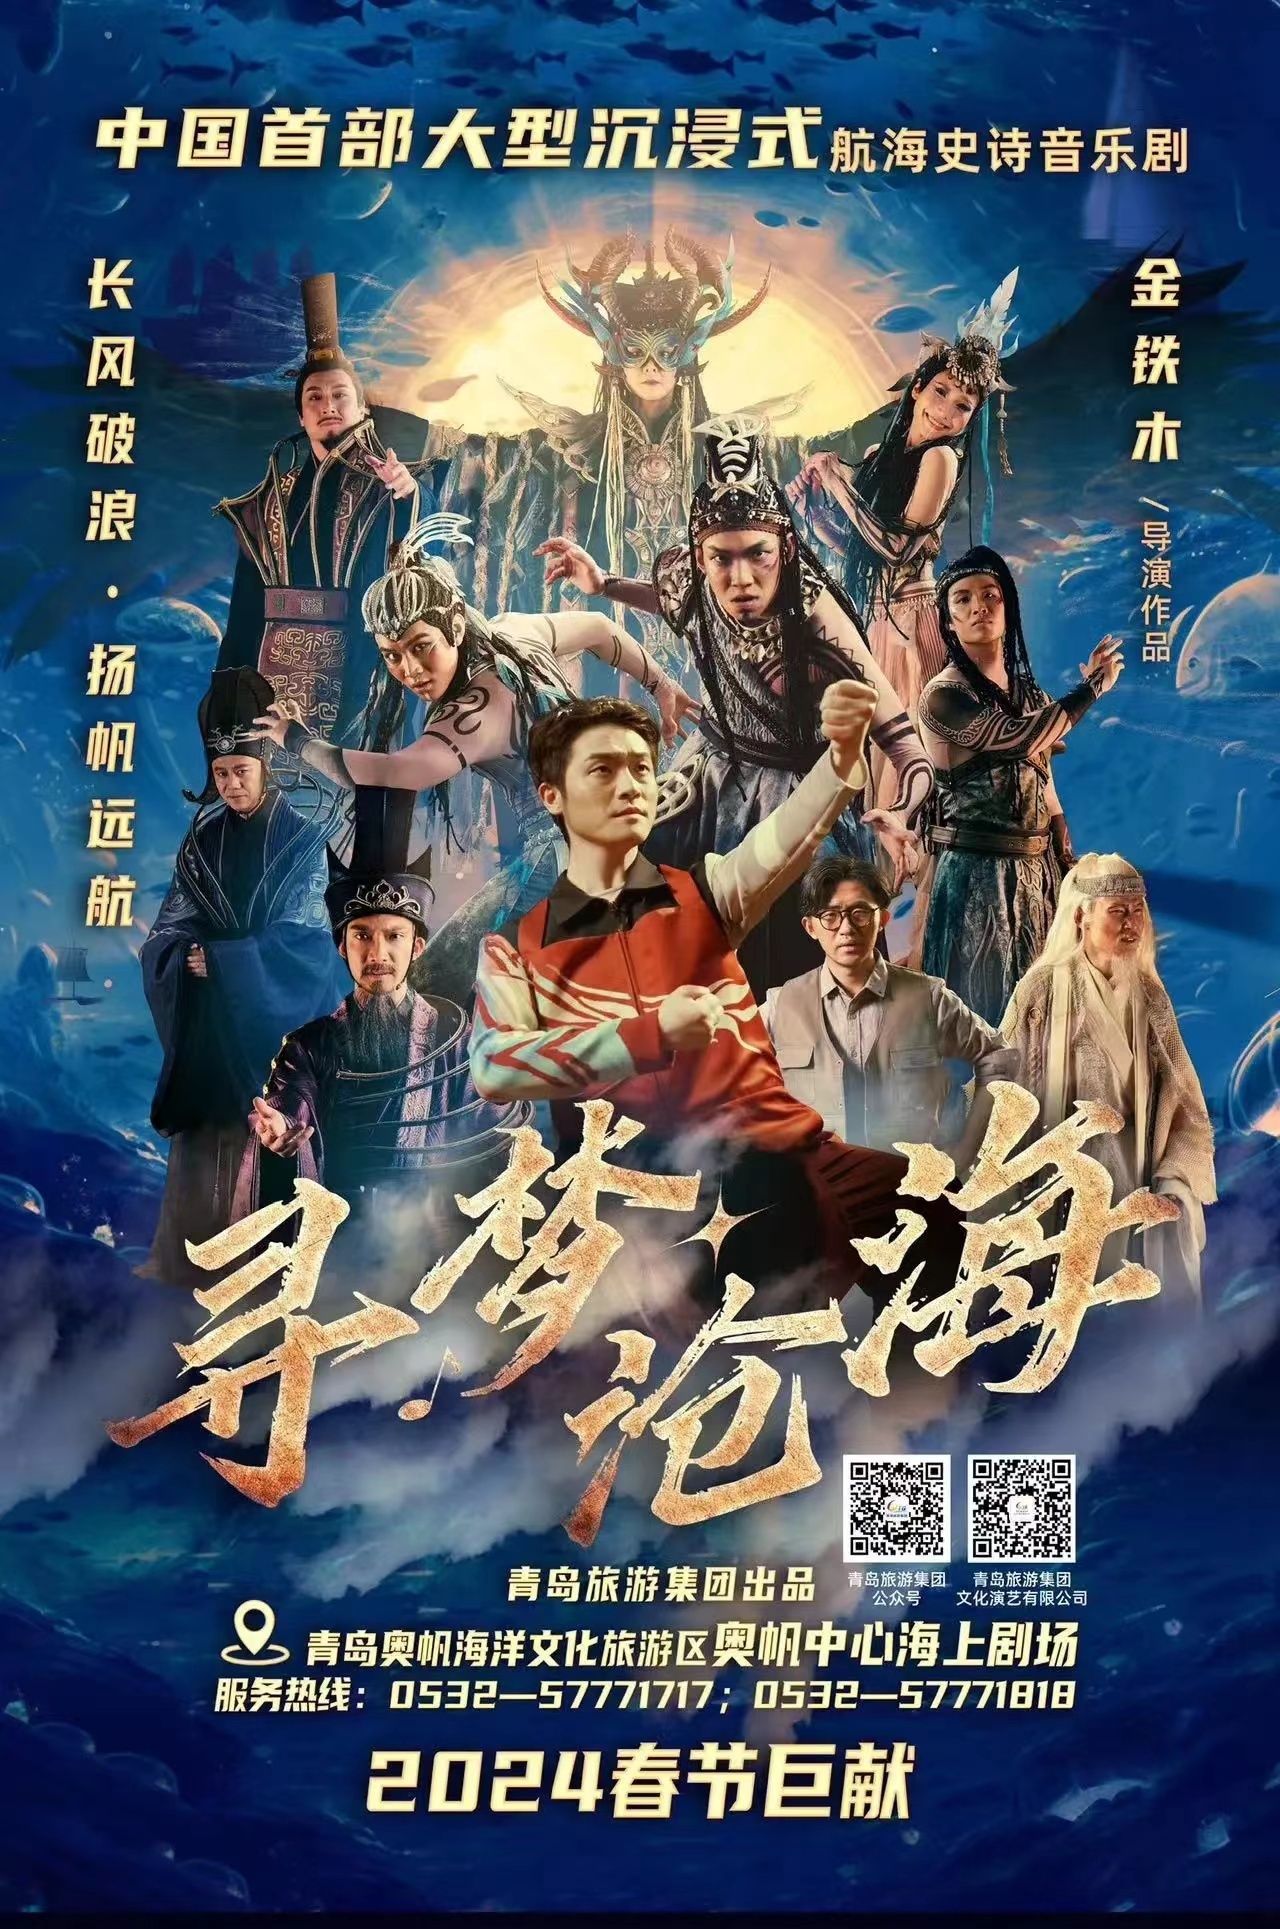 中国首部大型沉浸式航海史诗音乐剧 《寻梦沧海》 定档正月十五青岛首演